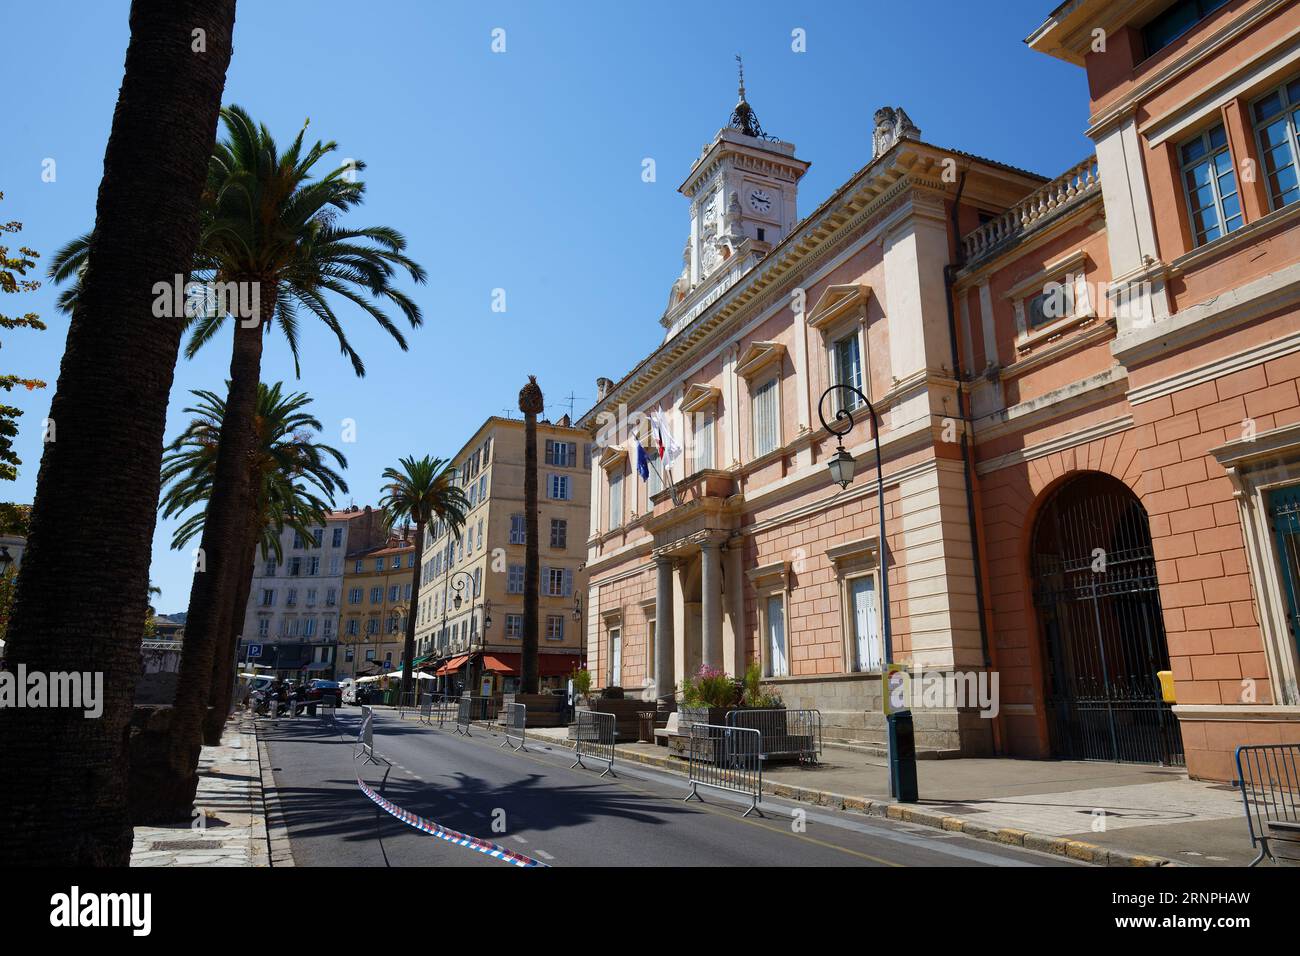 L'hôtel de ville d'Ajaccio encadrée de feuilles de palmiers. Ajaccio est la capitale de l'île de Corse du Sud, France. Banque D'Images